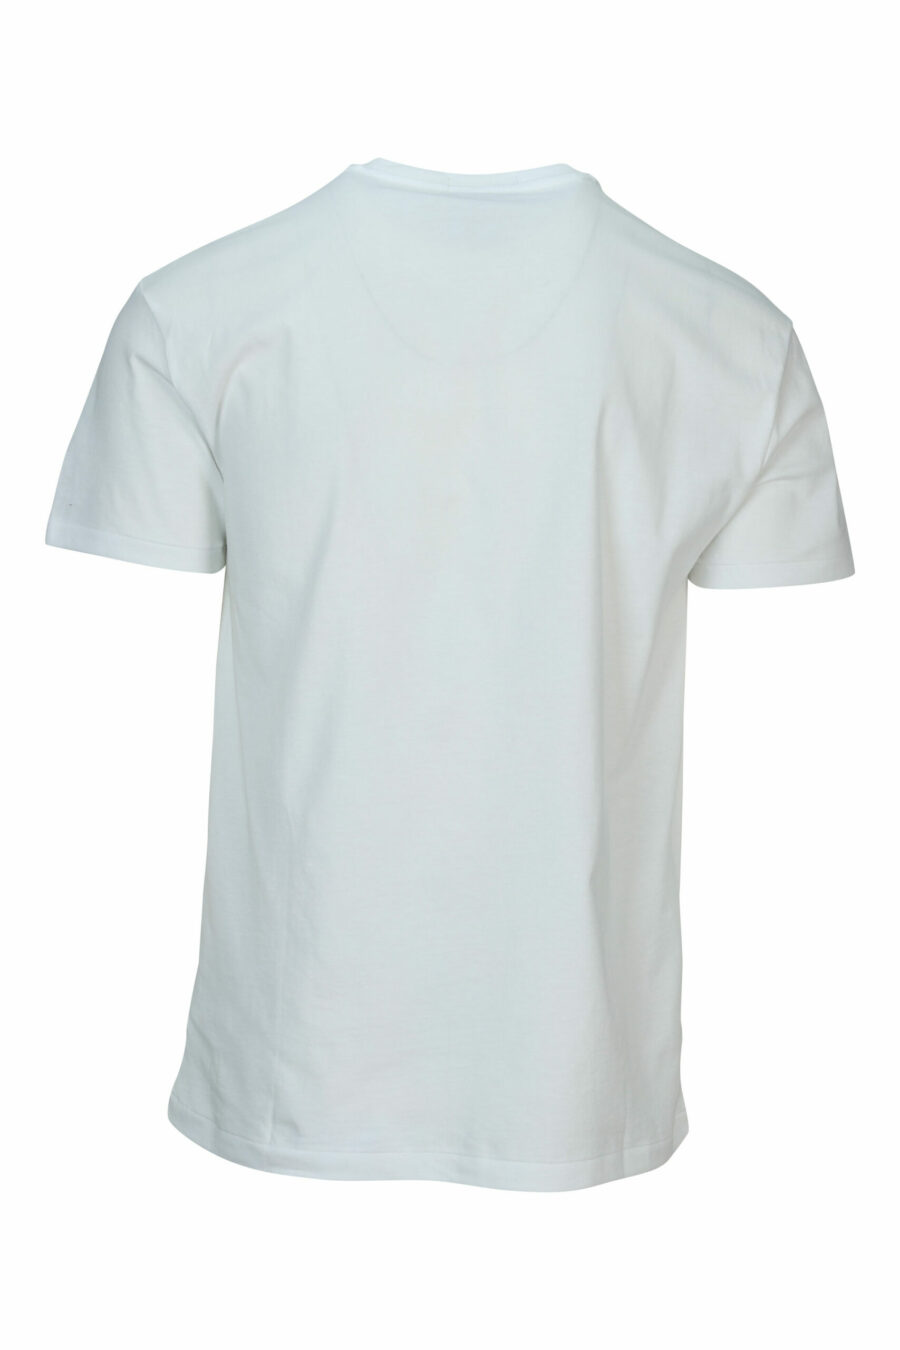 Camiseta blanca con maxilogo "polo bear" playero - 3616535843479 1 scaled